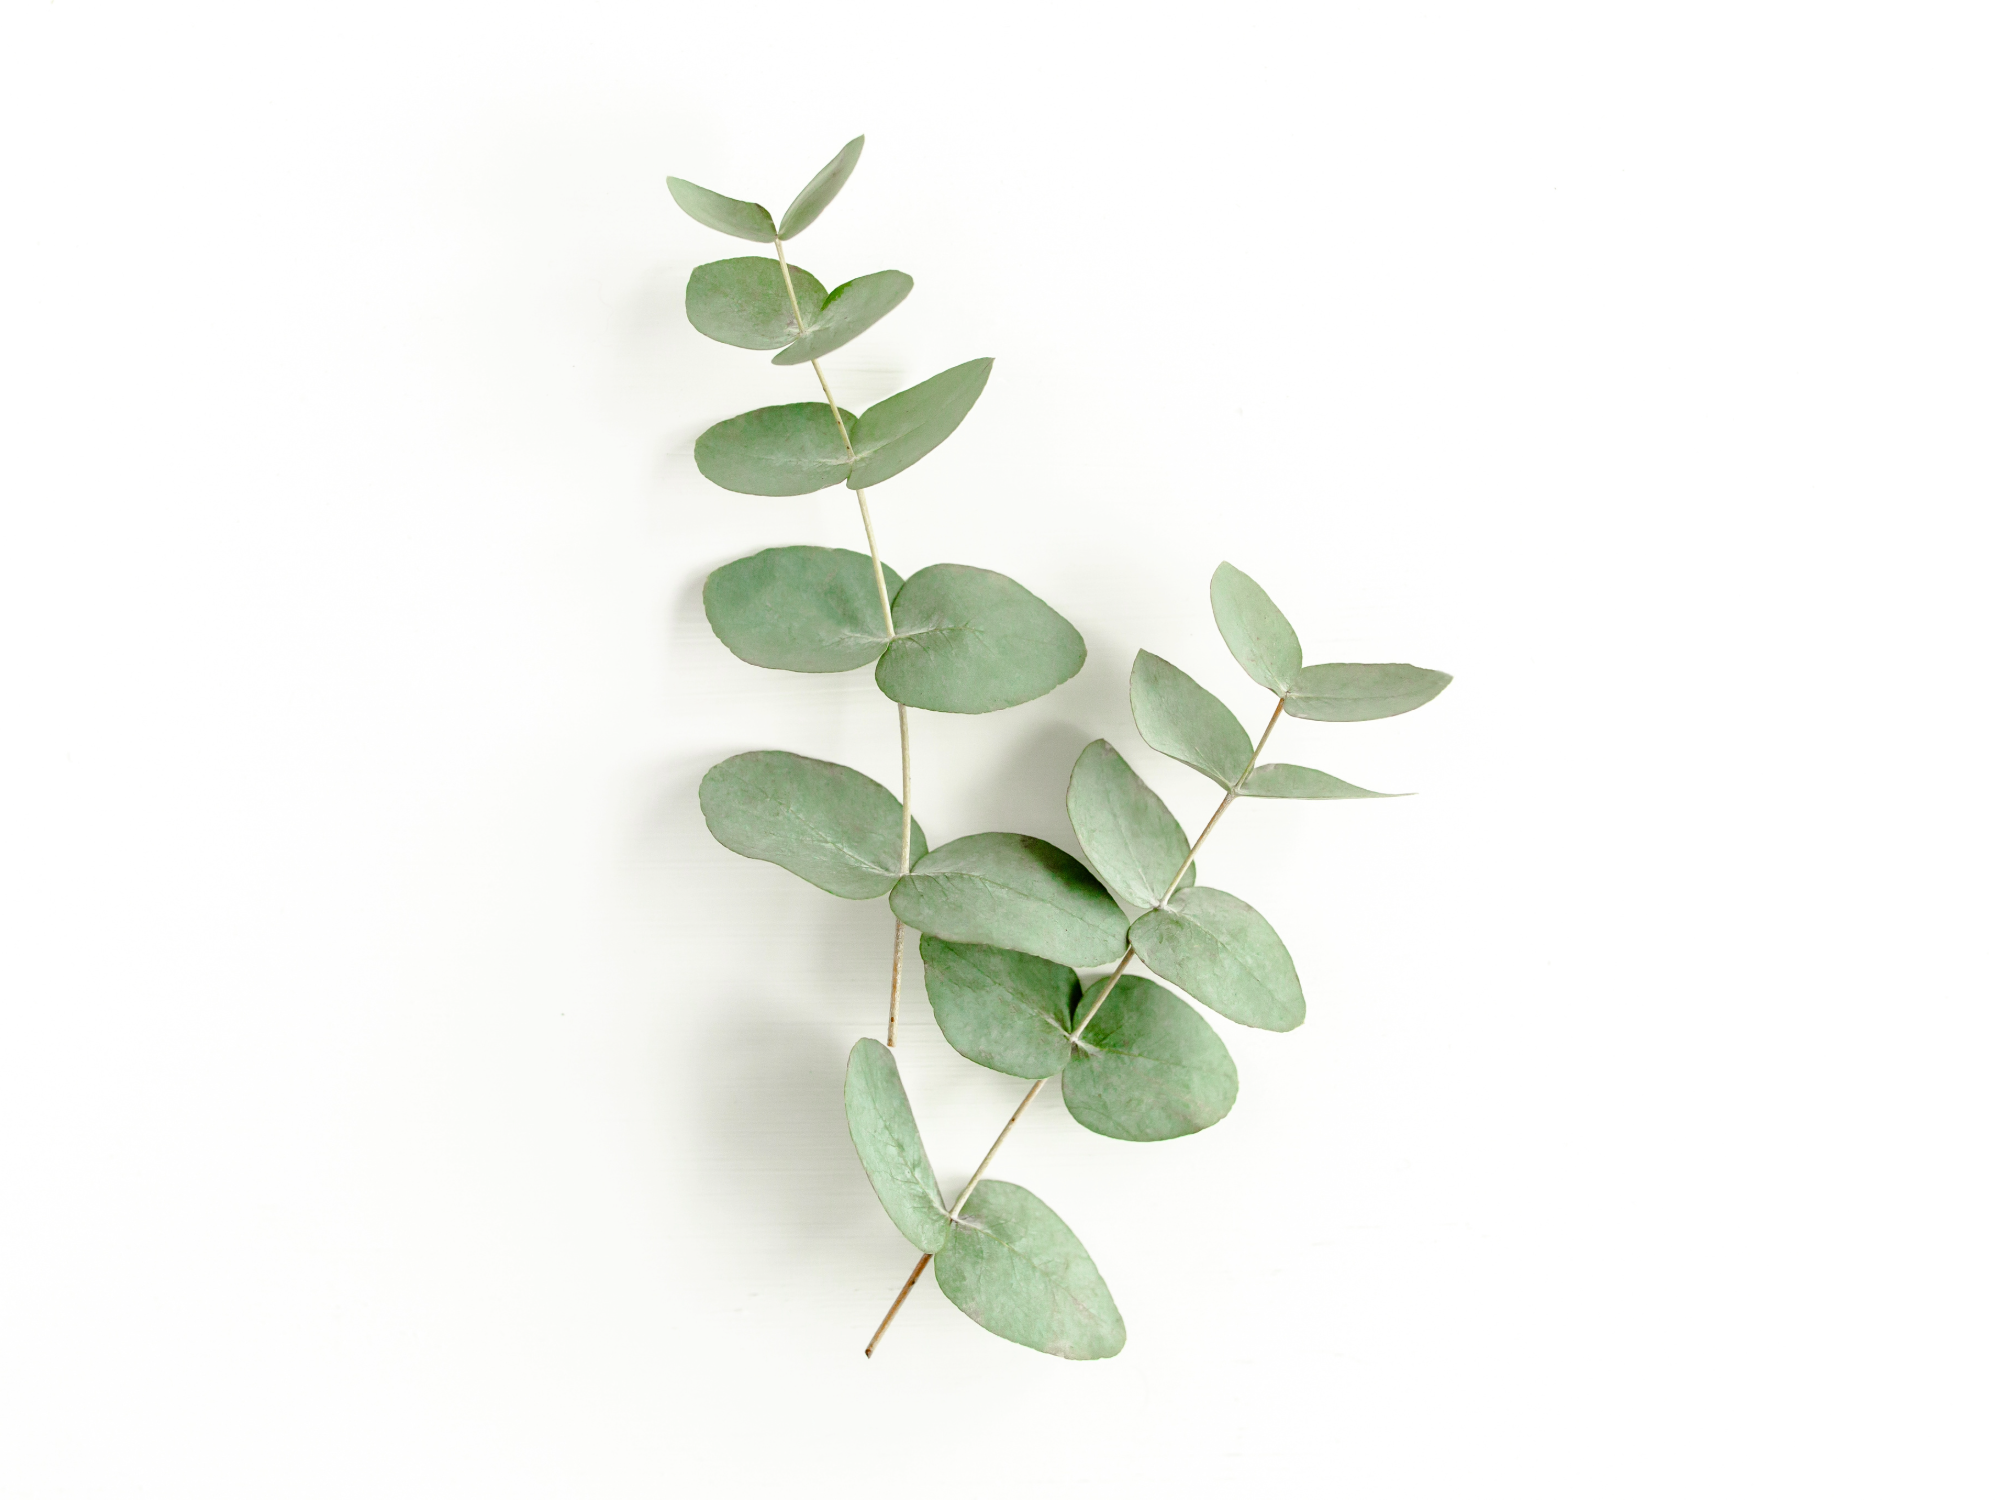 2. Eucalyptus: The Respiratory Ally